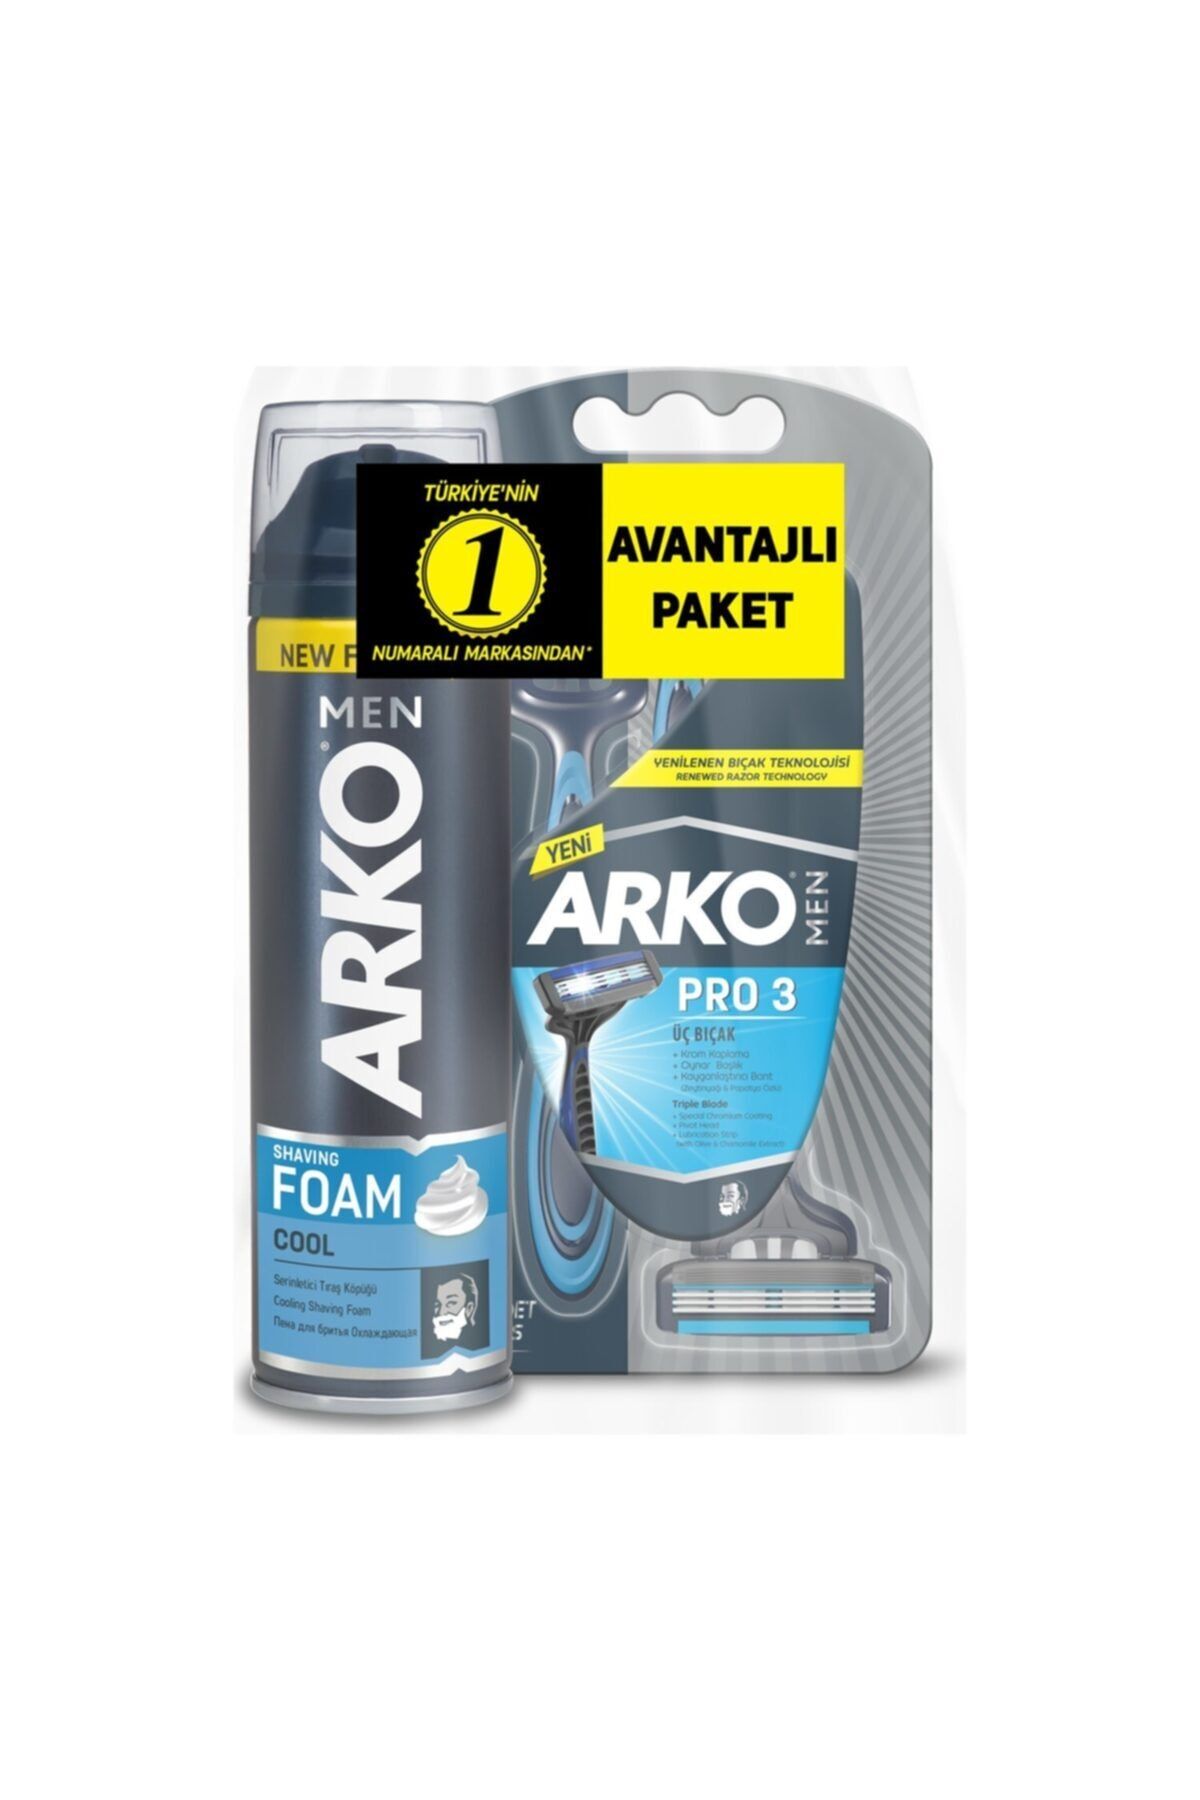 Arko Men T3 Pro 3 Bıçaklı Tıraş Bıçağı 3'lü & Cool Tıraş Köpüğü 200 Ml Avantaj Paketi